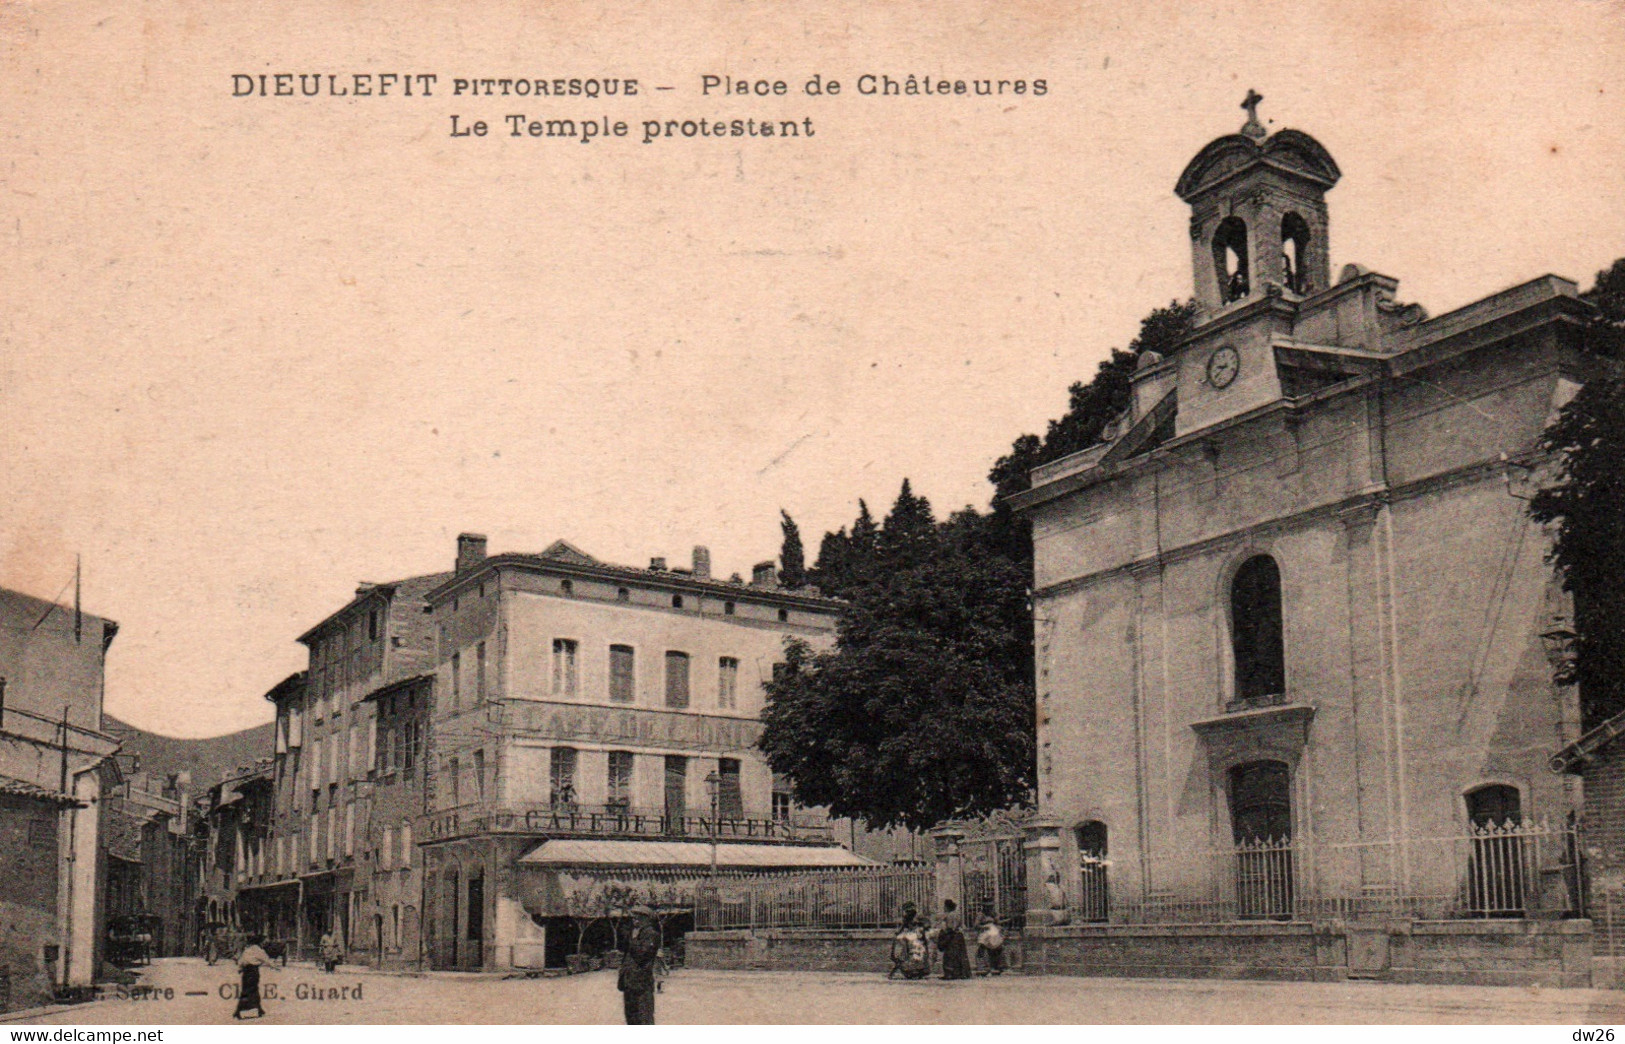 Dieulefit (Drôme) Place De Châteauras, Le Temple Protestant (Eglise Réformée) Café De L'Univers - Edition Serre - Dieulefit